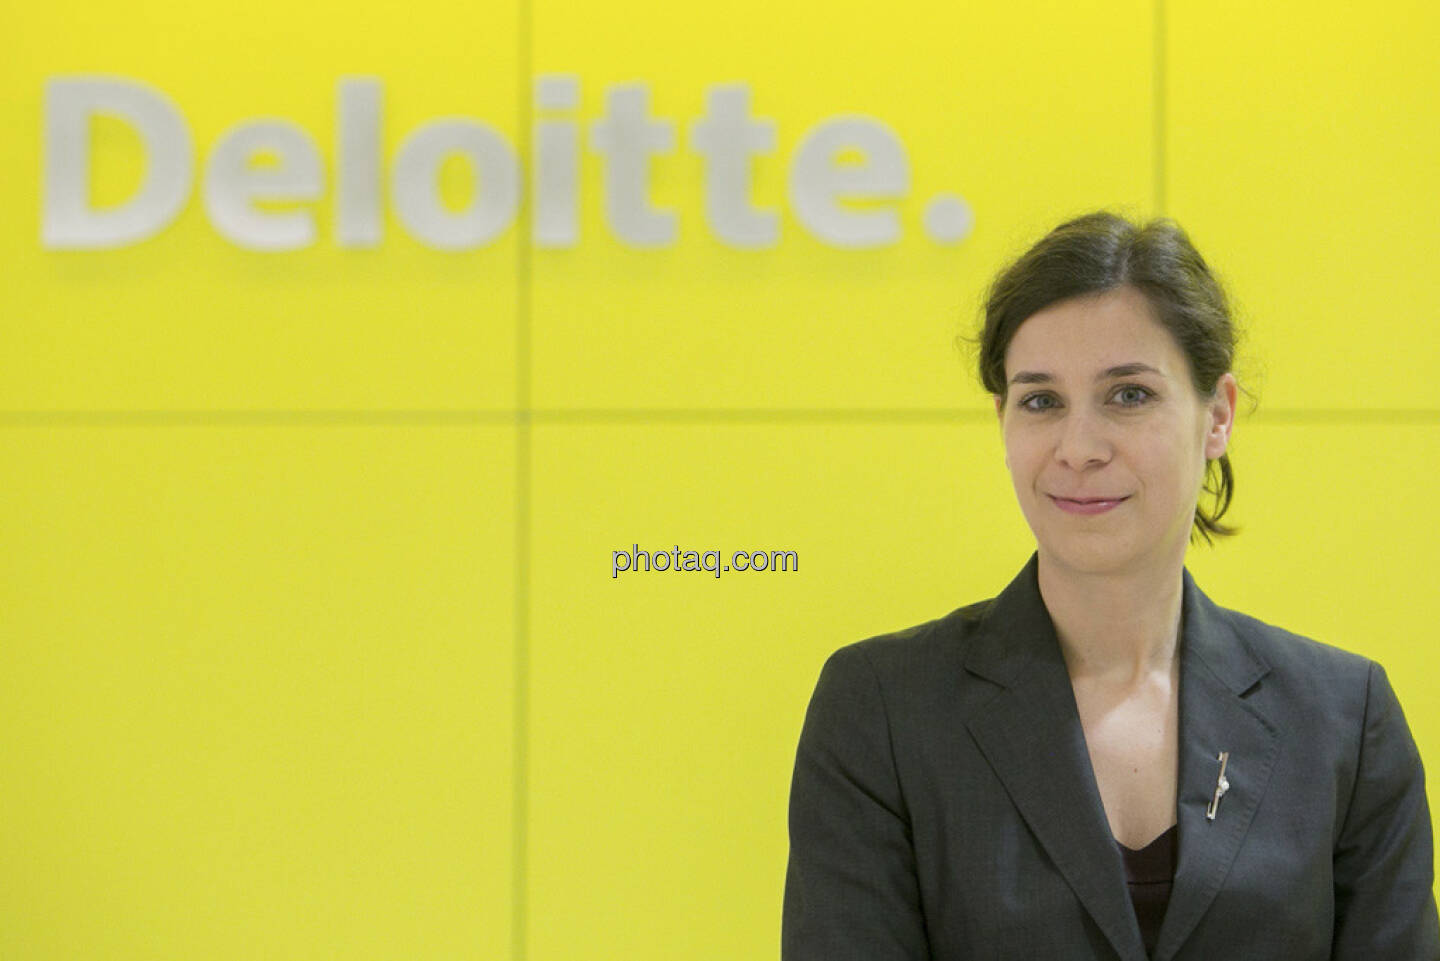 Deloitte - Nora Engel